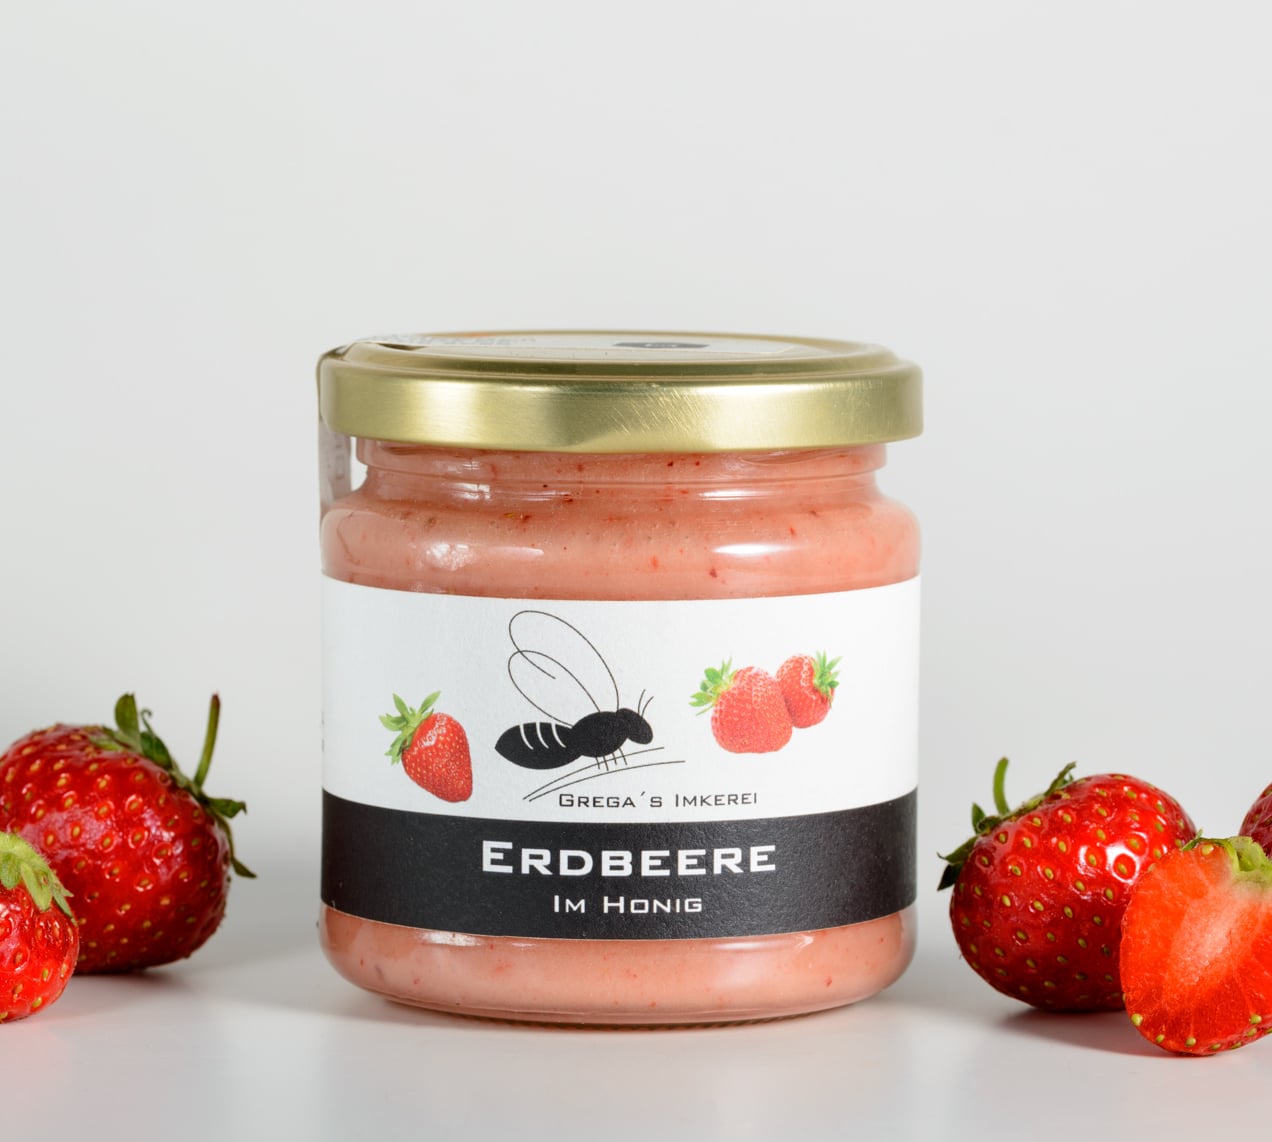 Erdbeere im Honig von Grega's Imkerei